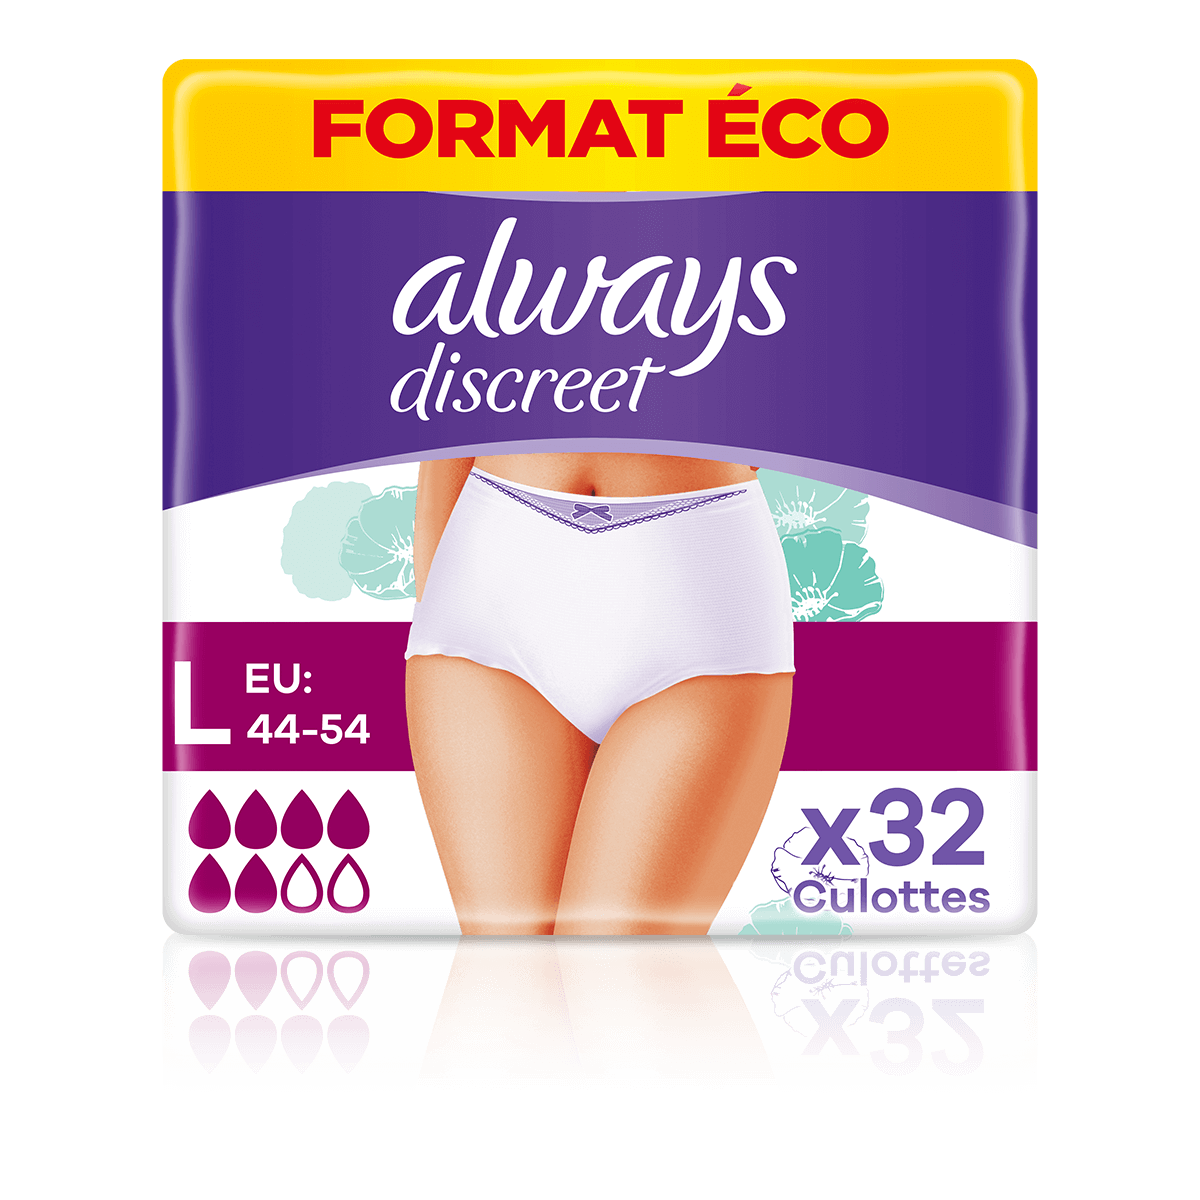 Culottes d'incontinence et post-partum Always Discreet, G, maximum plus, 4x  plus de douceur, testées sous contrôle dermatologique, sans parfum 24  culottes 